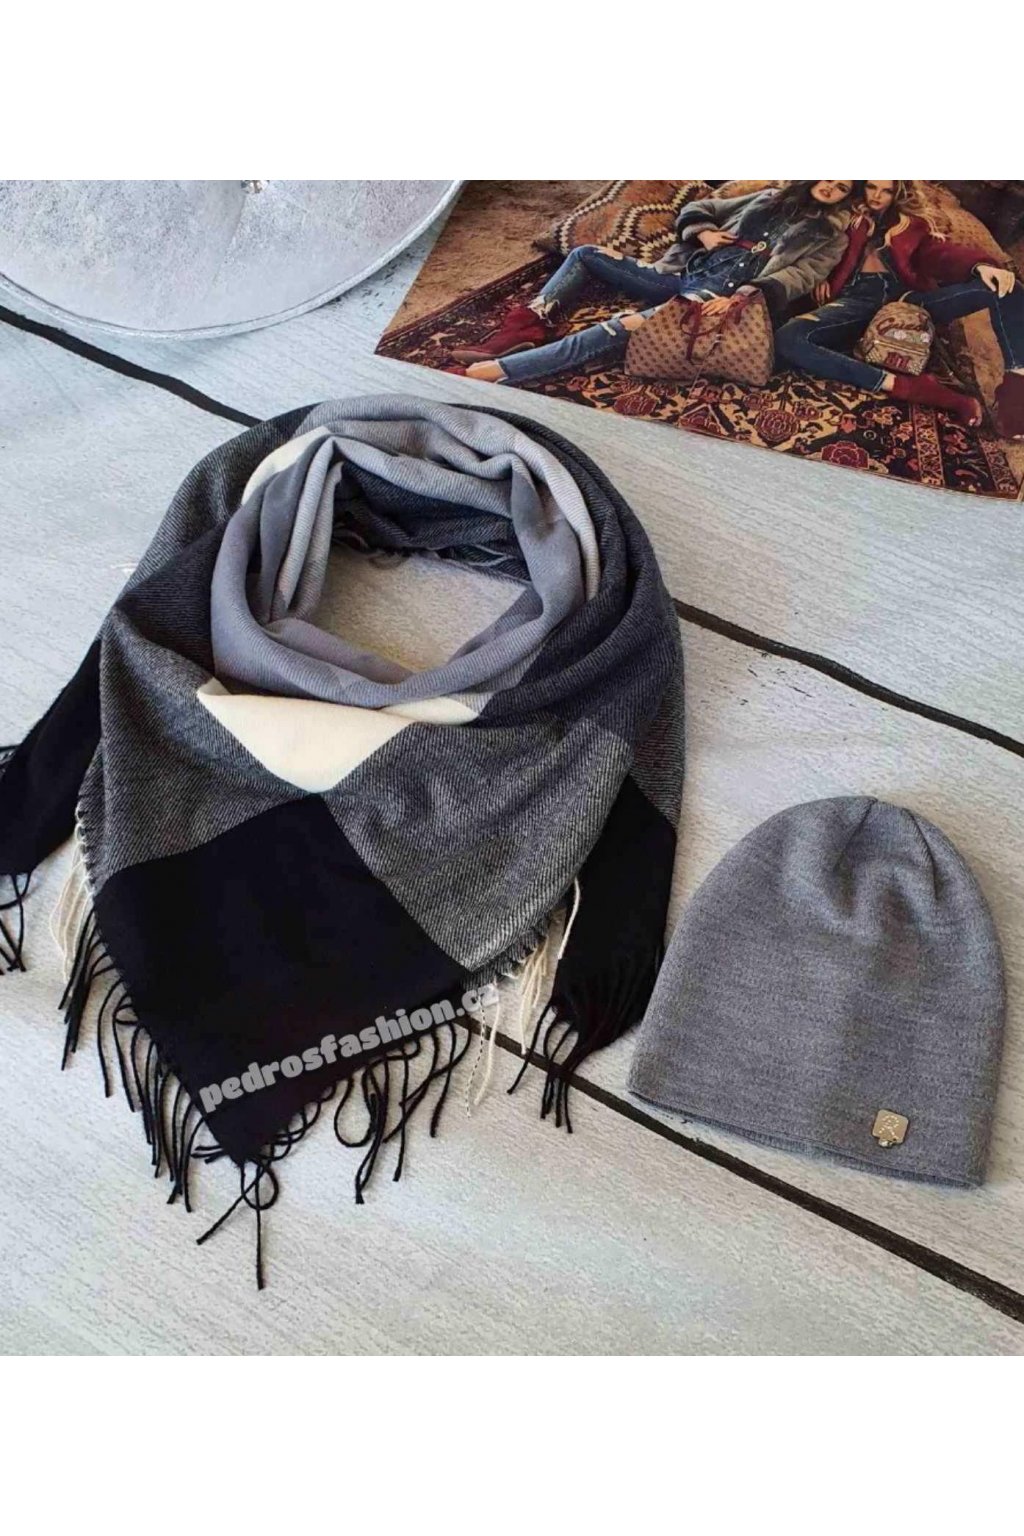 Sladný set čepice a šátku v kombinaci černé, šedé a krémové barvě